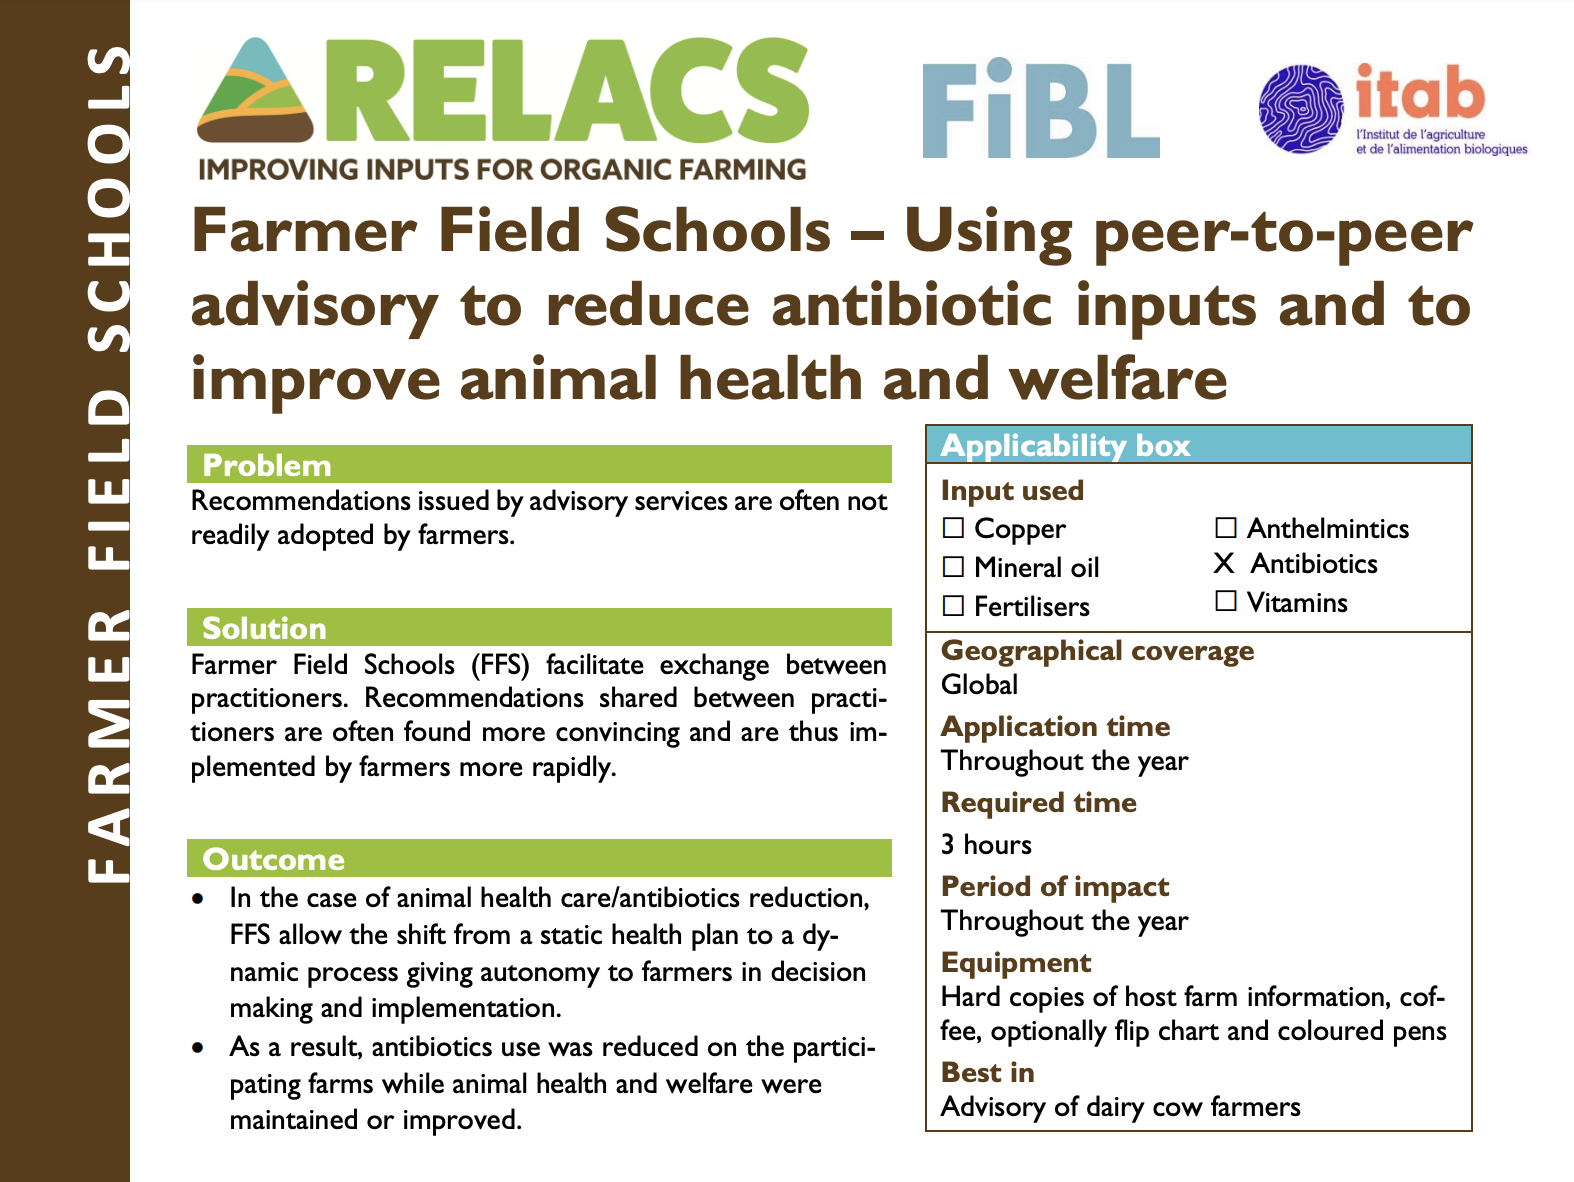 Scuole sul campo per agricoltori – Utilizzo della consulenza tra pari per ridurre l’impiego di antibiotici e migliorare la salute e il benessere degli animali (RELACS Practice Abstract)